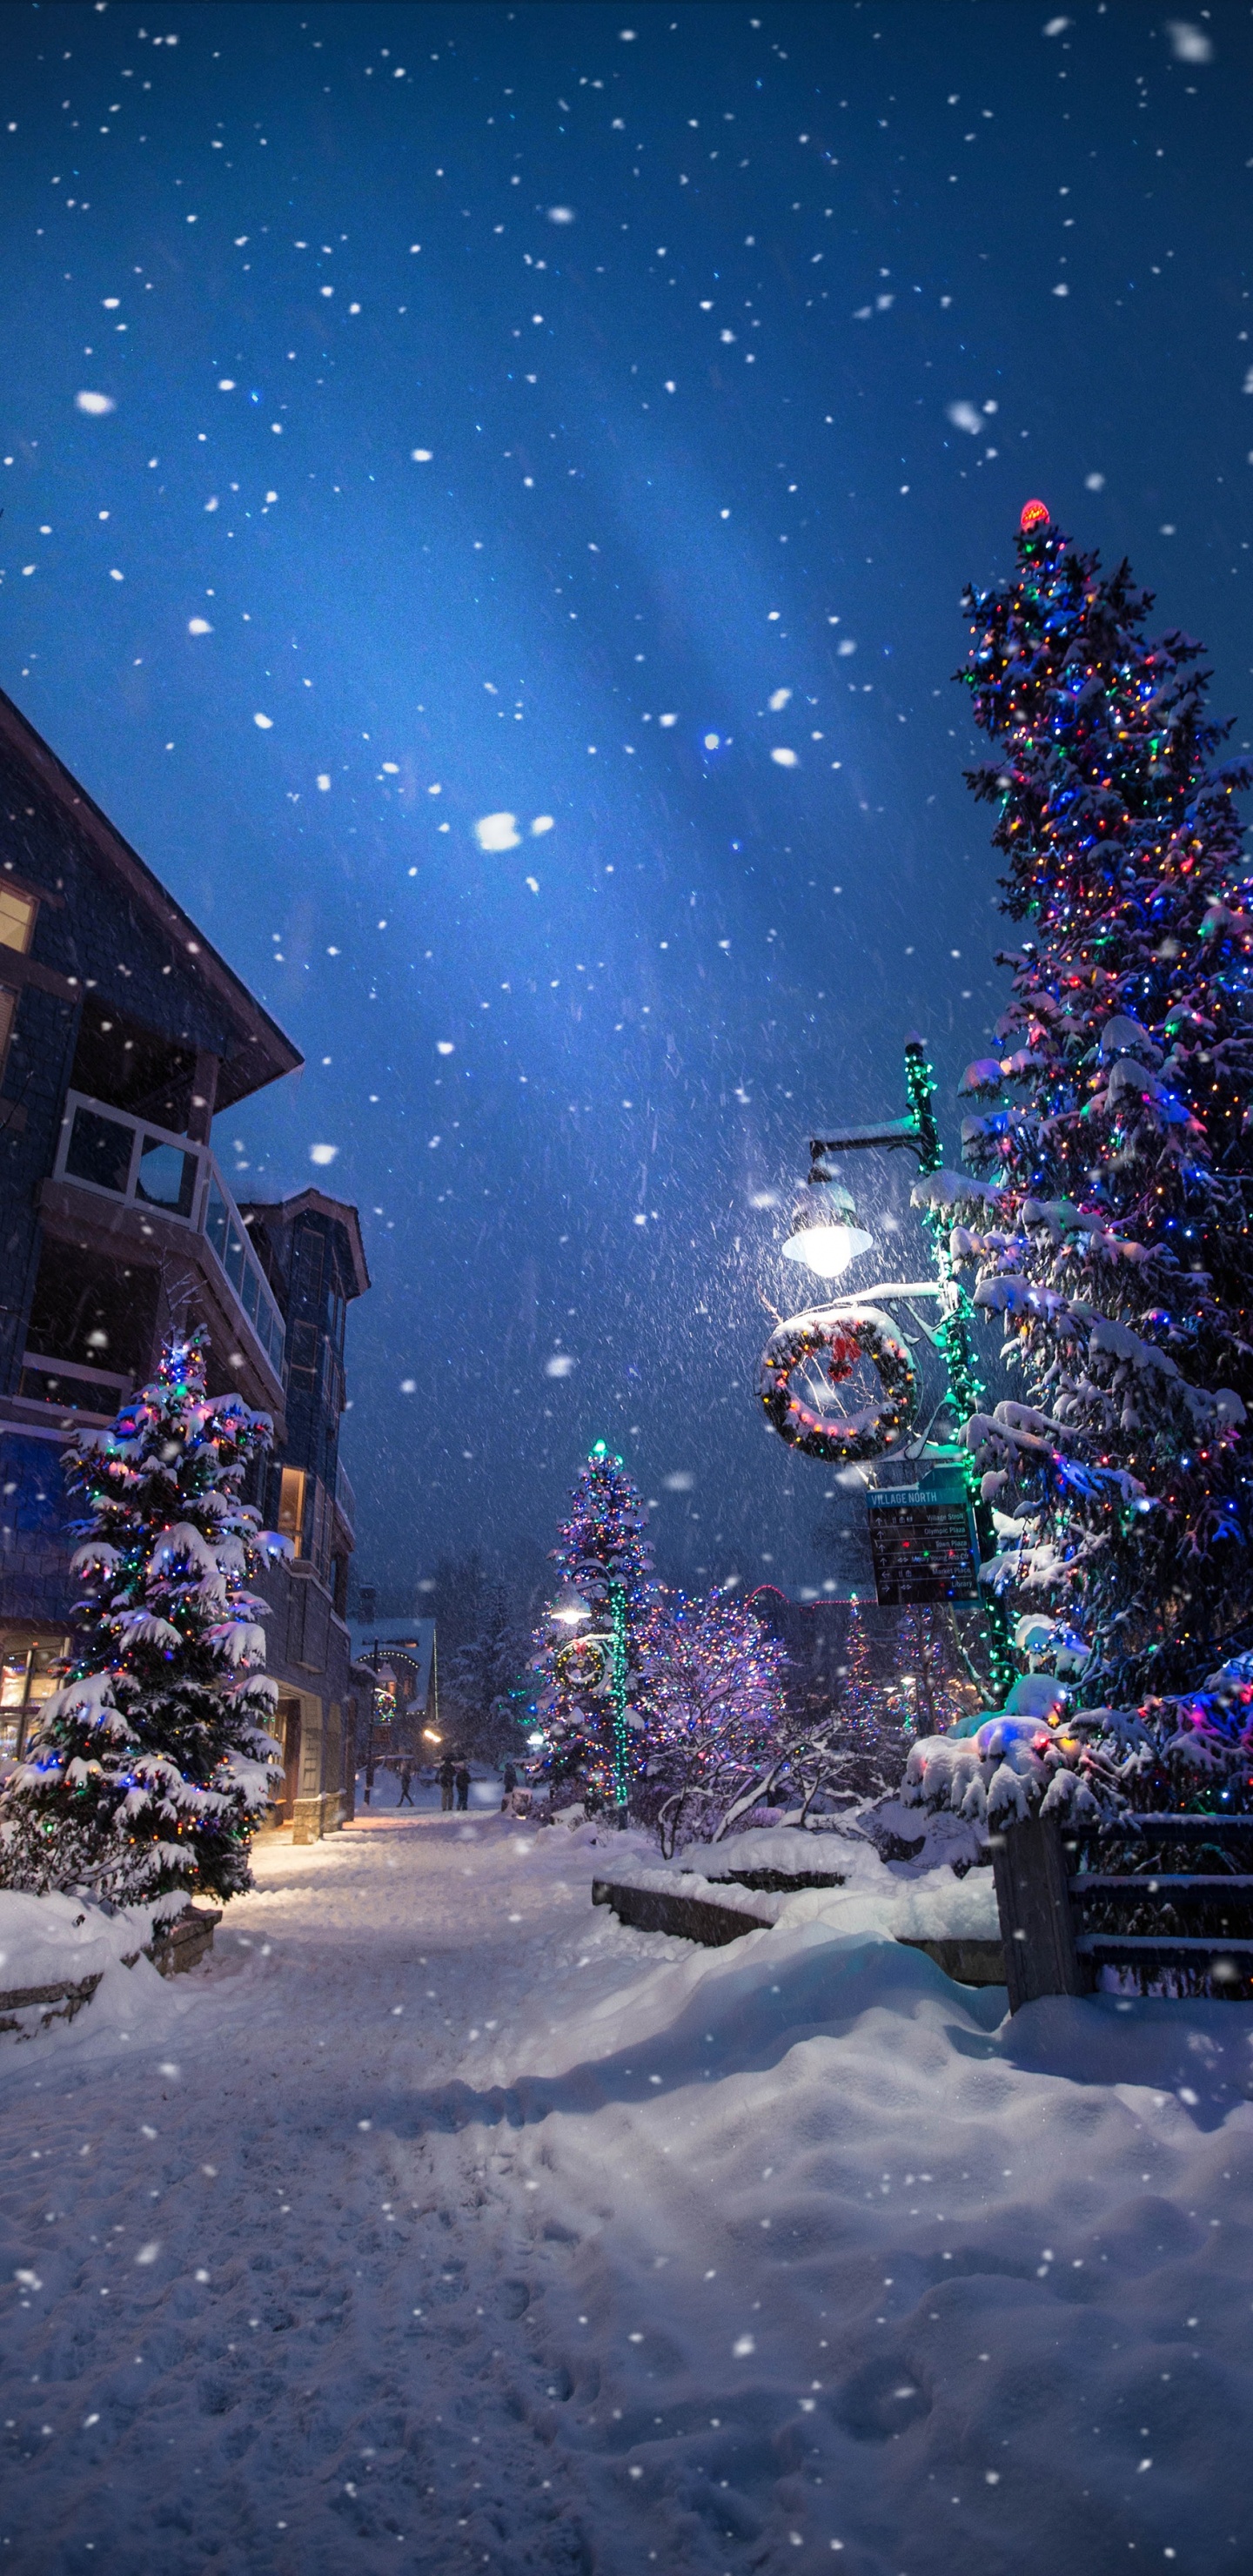 Weihnachten, Weihnachtsbaum, Winter, Schnee, Nacht. Wallpaper in 1440x2960 Resolution